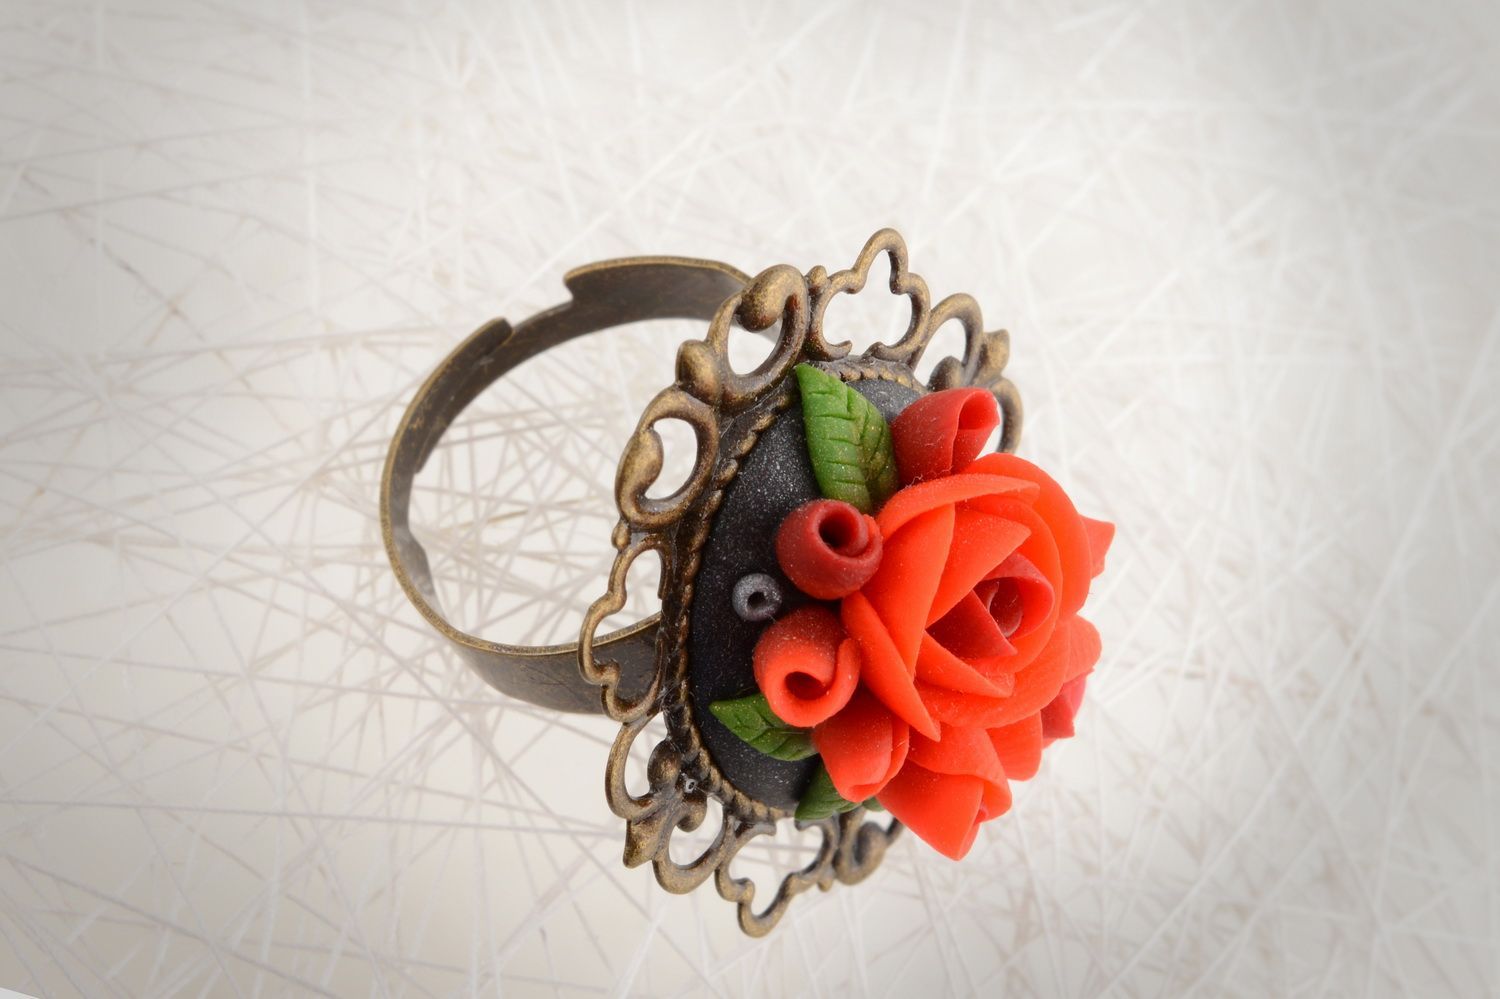 Кольцо цветок из полимерной глины красное диаметром 17 мм красивое ручной работы фото 1